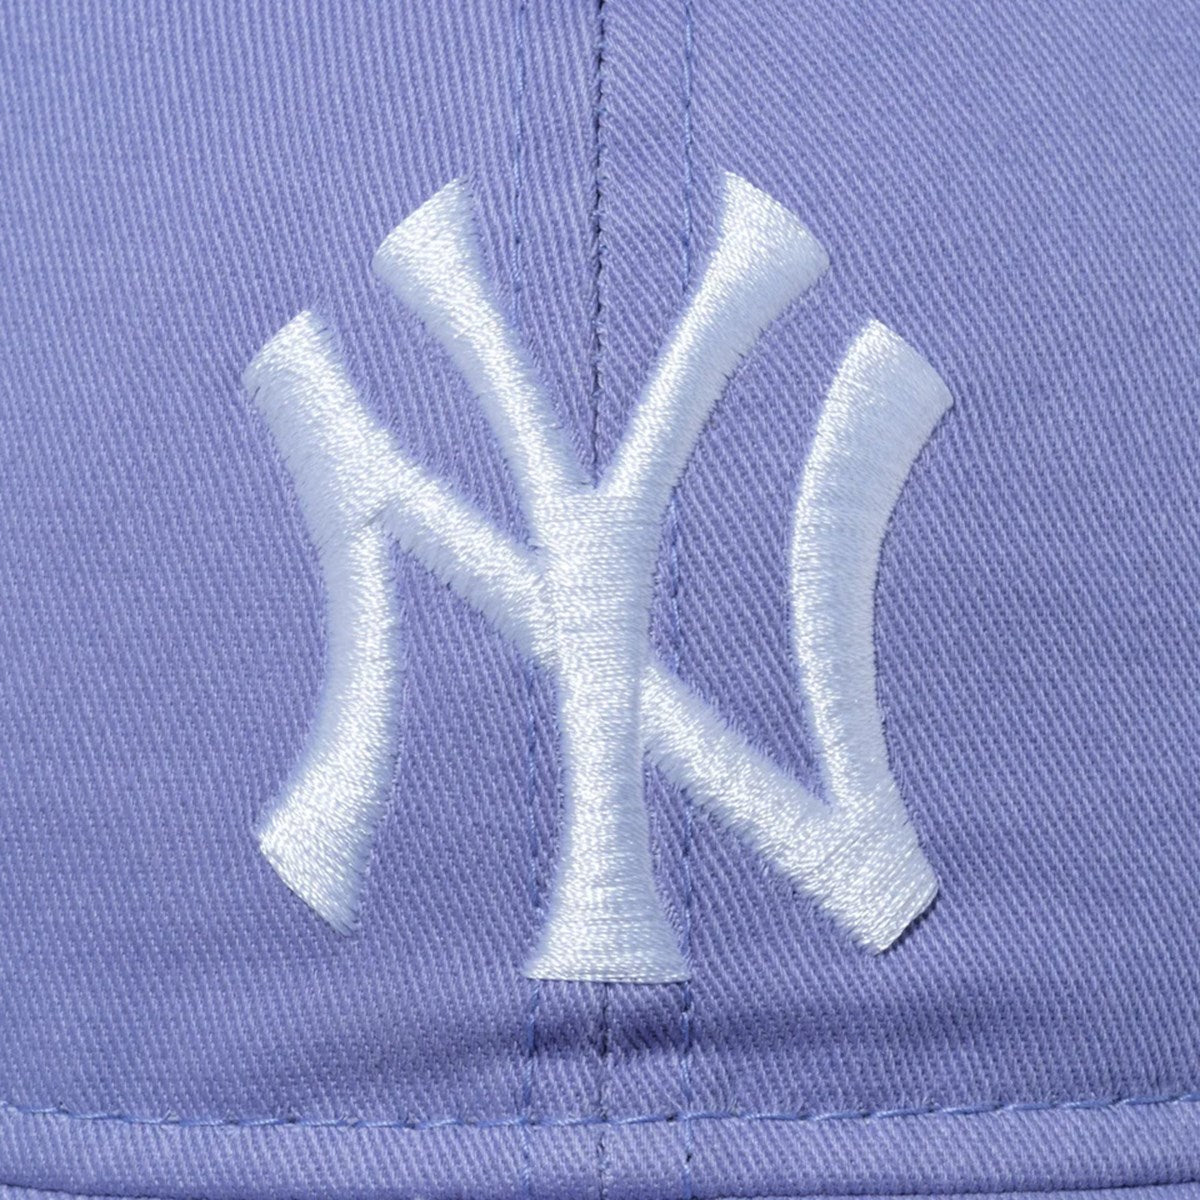 NEW ERA New York Yankees - 9TWENTY WASHED NEYYAN LAV WHI [60546696]